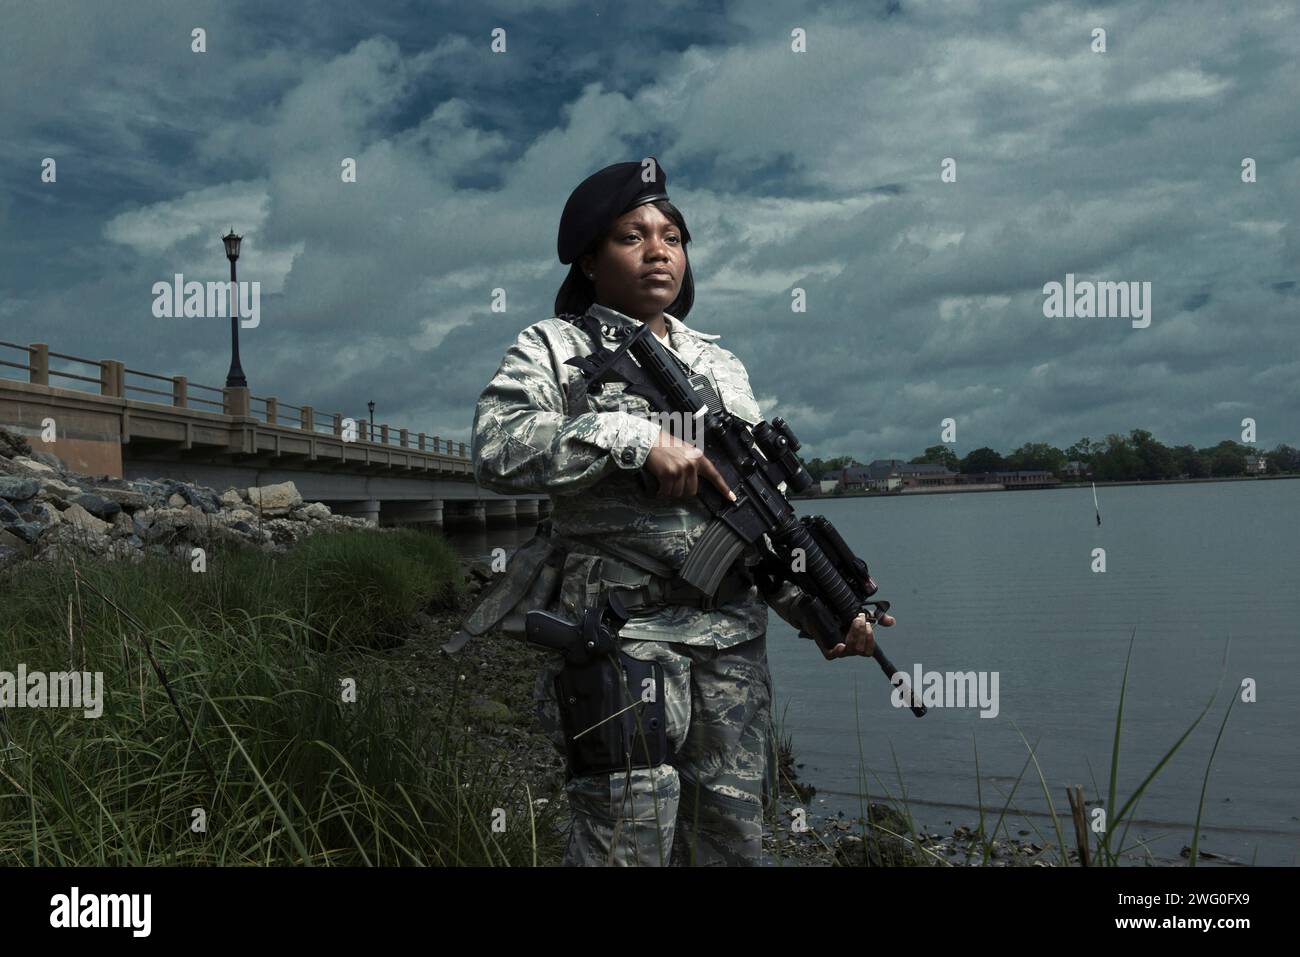 Une aviateur afro-américaine des forces de sécurité de l'armée de l'air en uniforme pose avec son fusil M-4 près du rivage d'une rivière. Banque D'Images